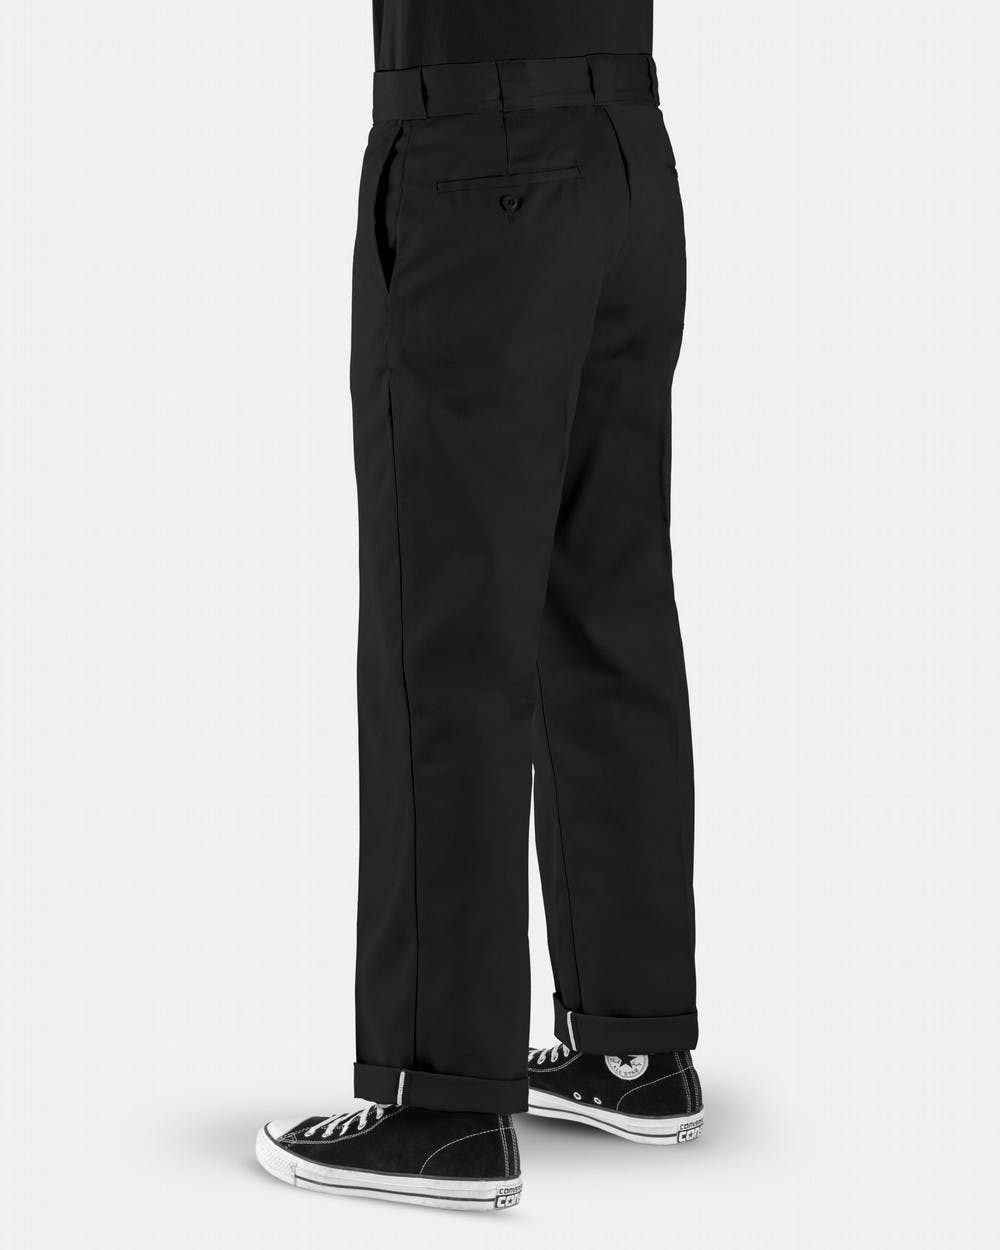 Dickies Pants Original Work Wear 874 Black